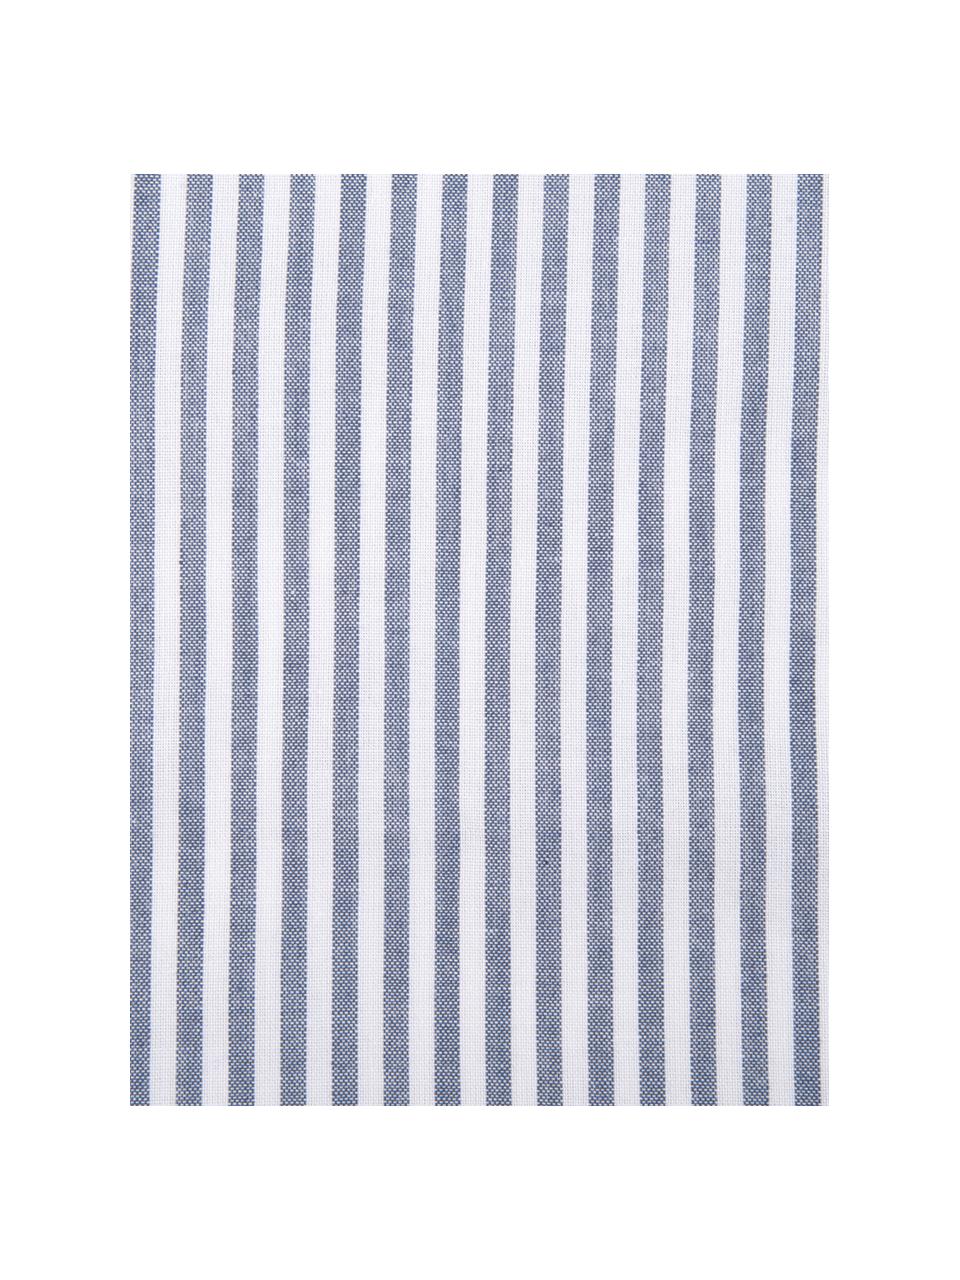 Baumwoll-Bettwäsche Ellie in Blau/Weiß, fein gestreift, Webart: Renforcé Fadendichte 118 , Weiß, gestreift, 155 x 220 cm + 1 Kissen 80 x 80 cm